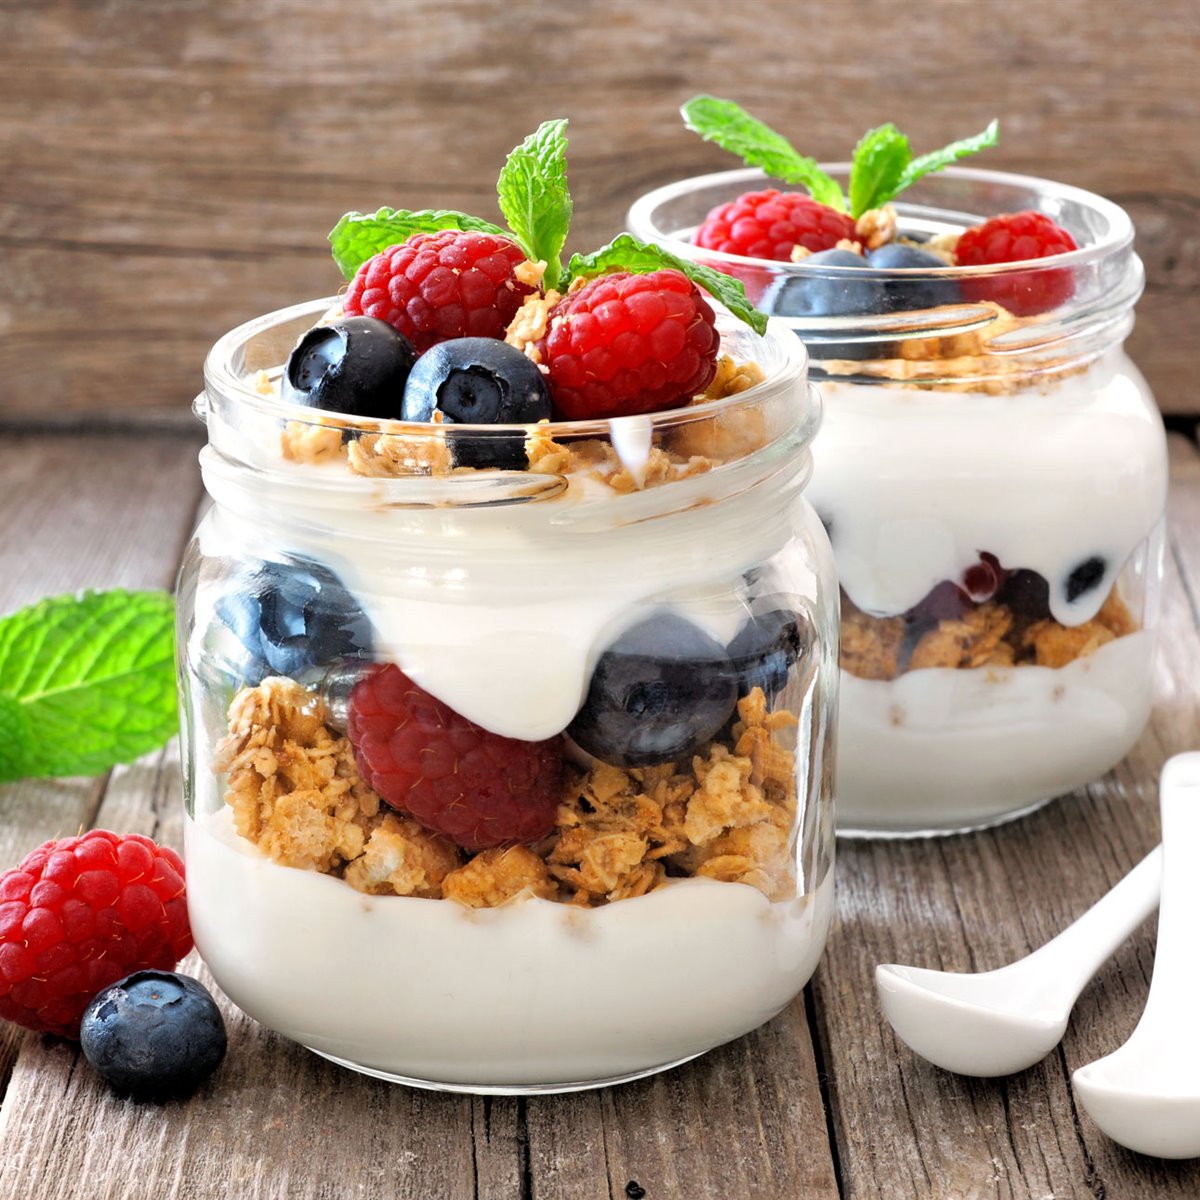 Cómo hacer yogurt casero, las 3 maneras más fáciles y rápidas